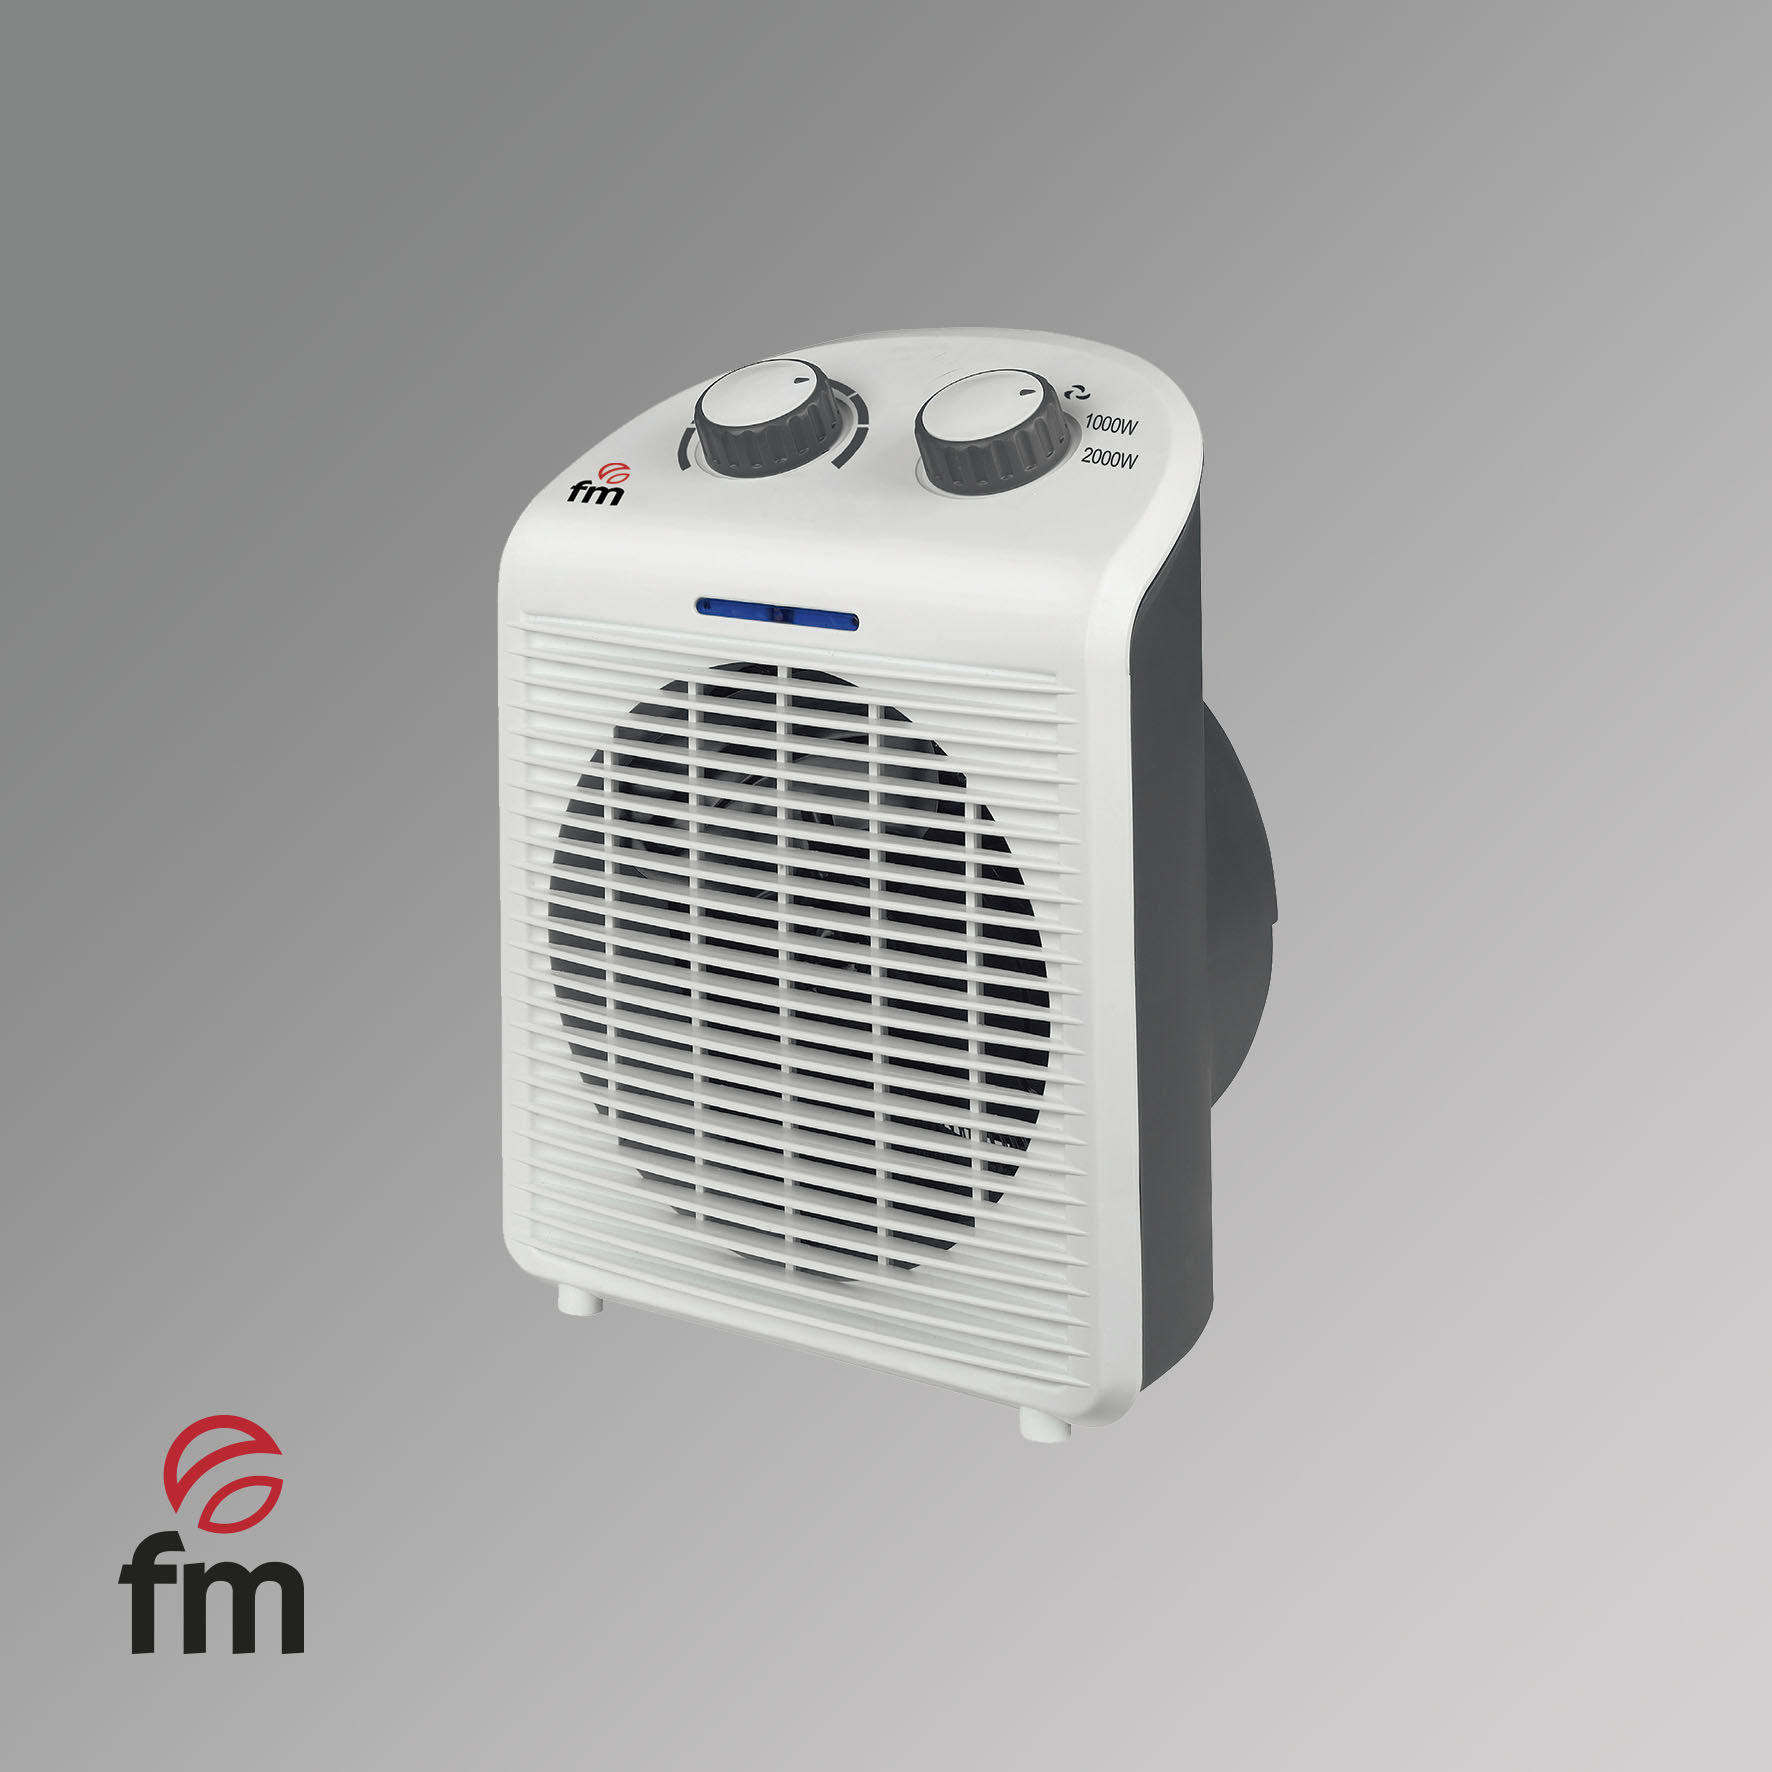 FM Calefacción TS-2001 Calefactor Cerámico de Pared 2000W